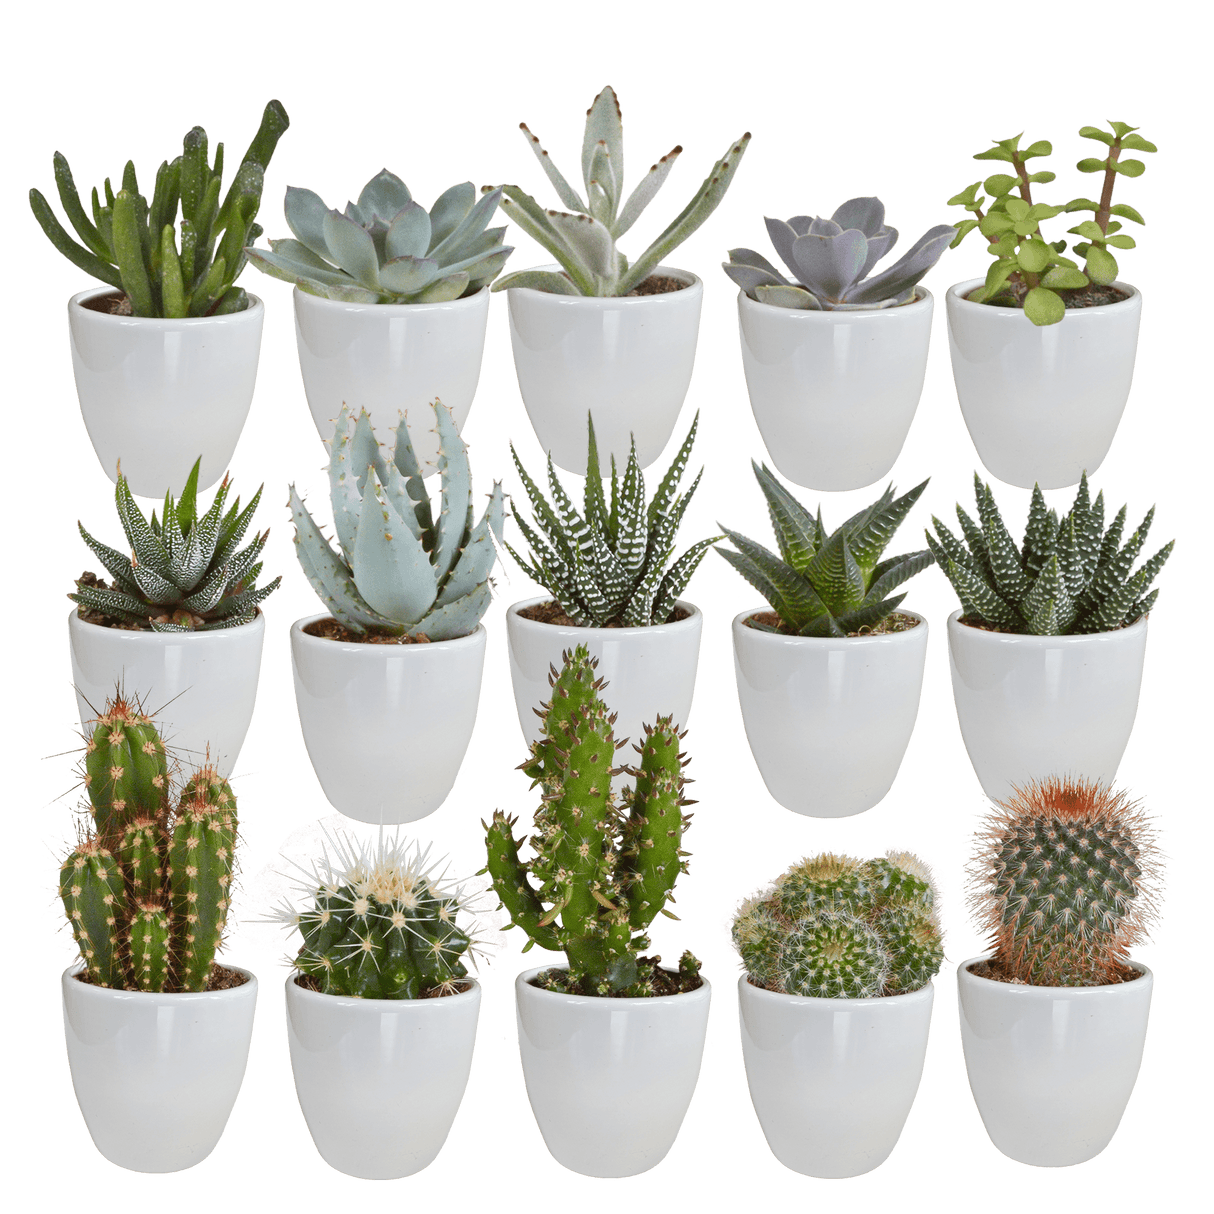 Lot de 20 cactus et succulentes en pot de diamètre 5,5 cm